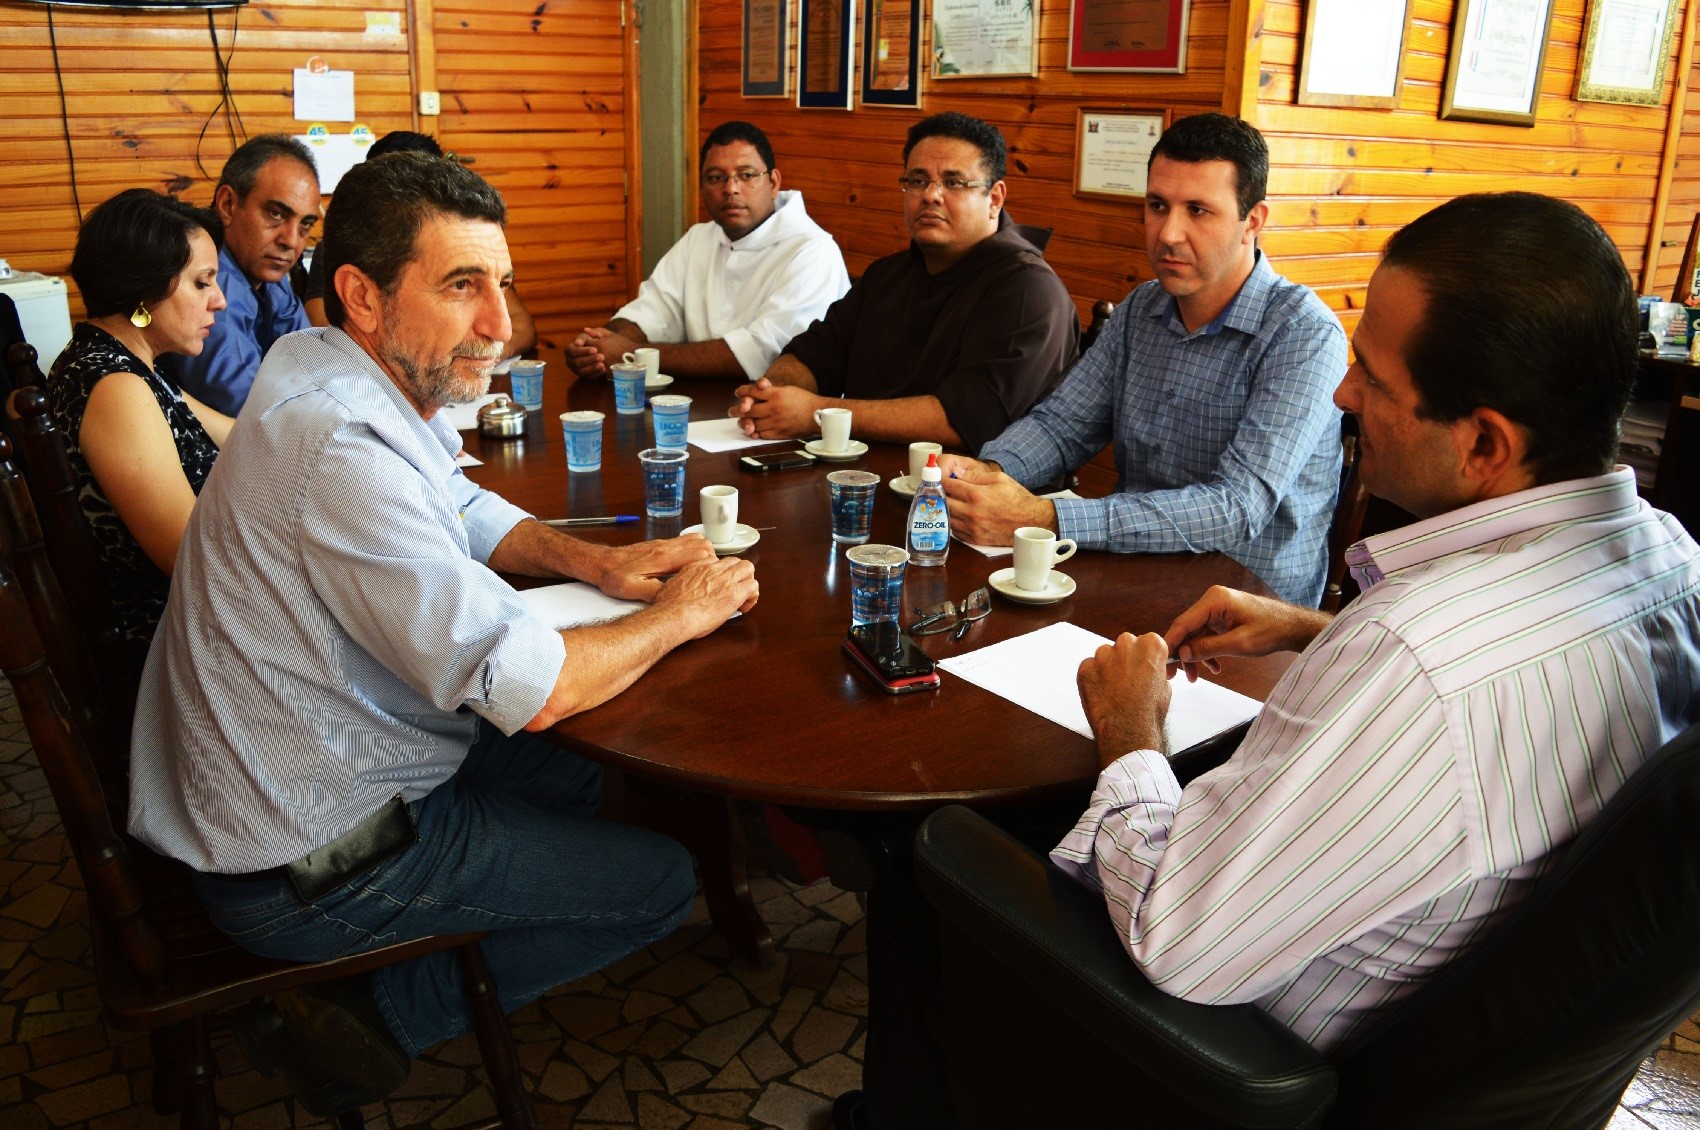 Nilson de Ângelo, Élida Trefilio, Caled Kadri, Frei Roberto, Frei Tarcísio, Leandro Uliam e Edmir Chedid (à dir.) durante reunião.